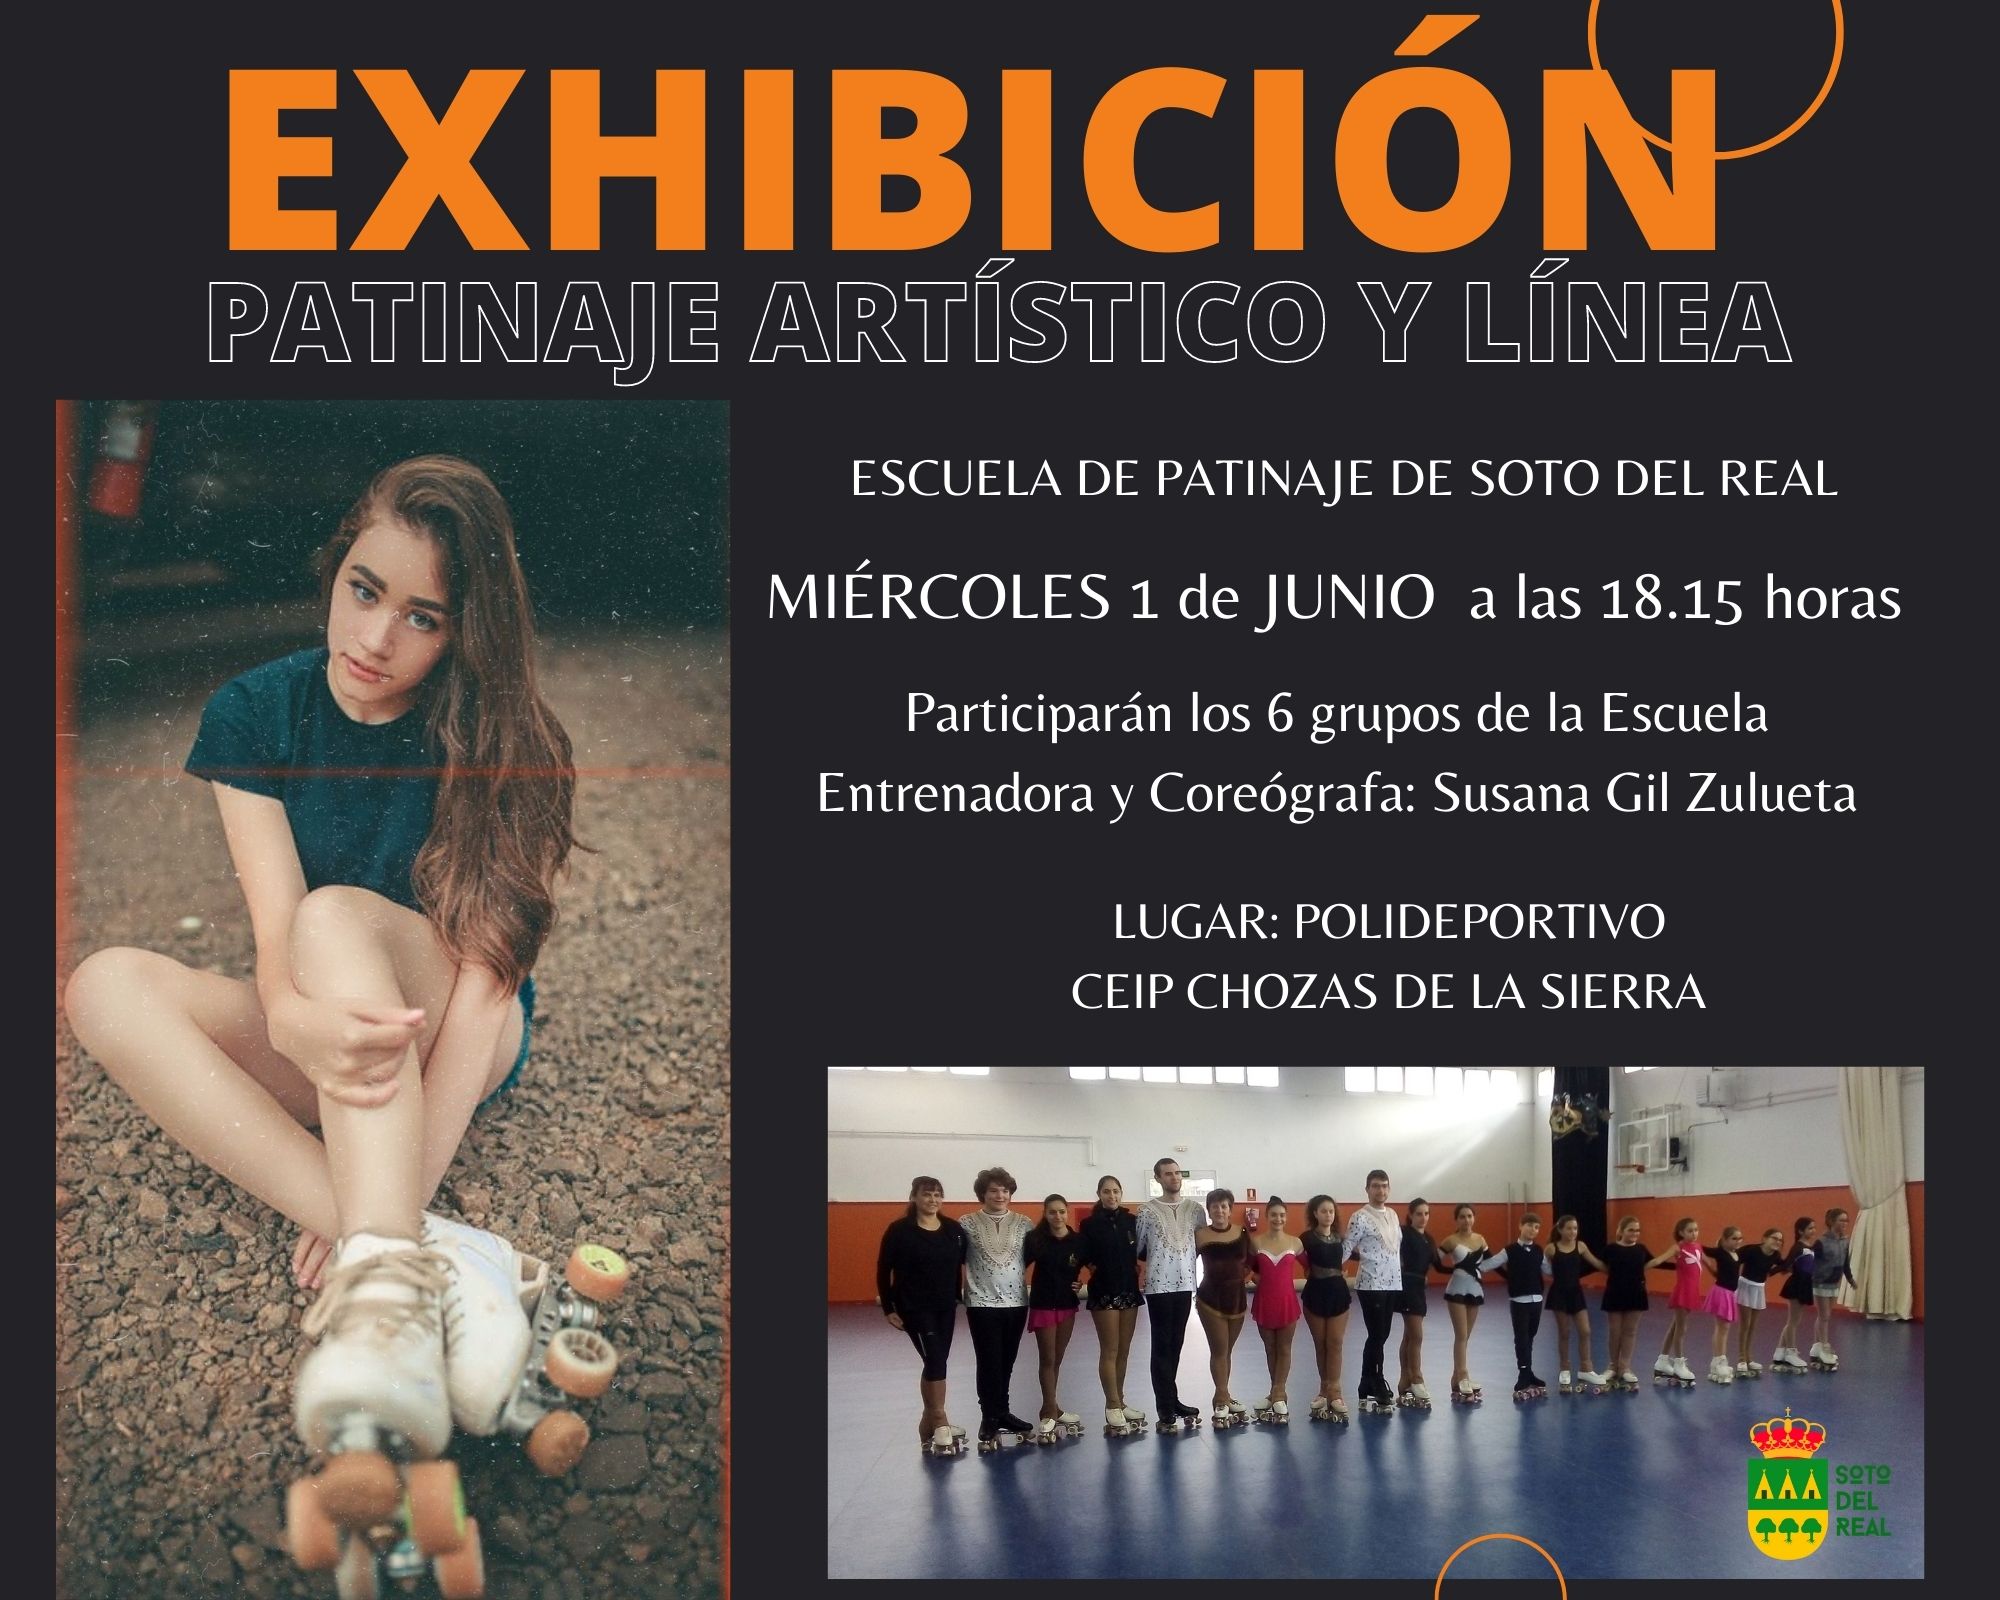 es suficiente Deportes jazz EXHIBICIÓN PATINAJE ARTÍSTICO - Ayuntamiento - Soto del Real